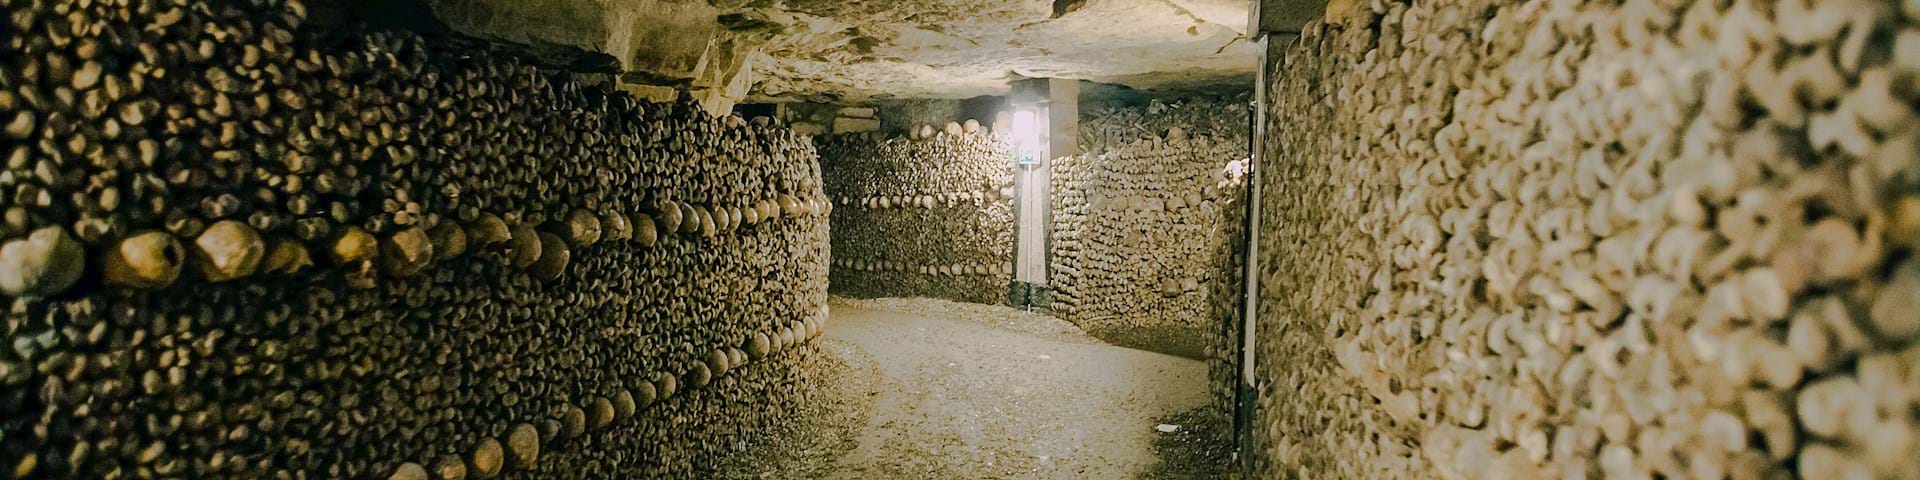 Paris Catacombs Tours